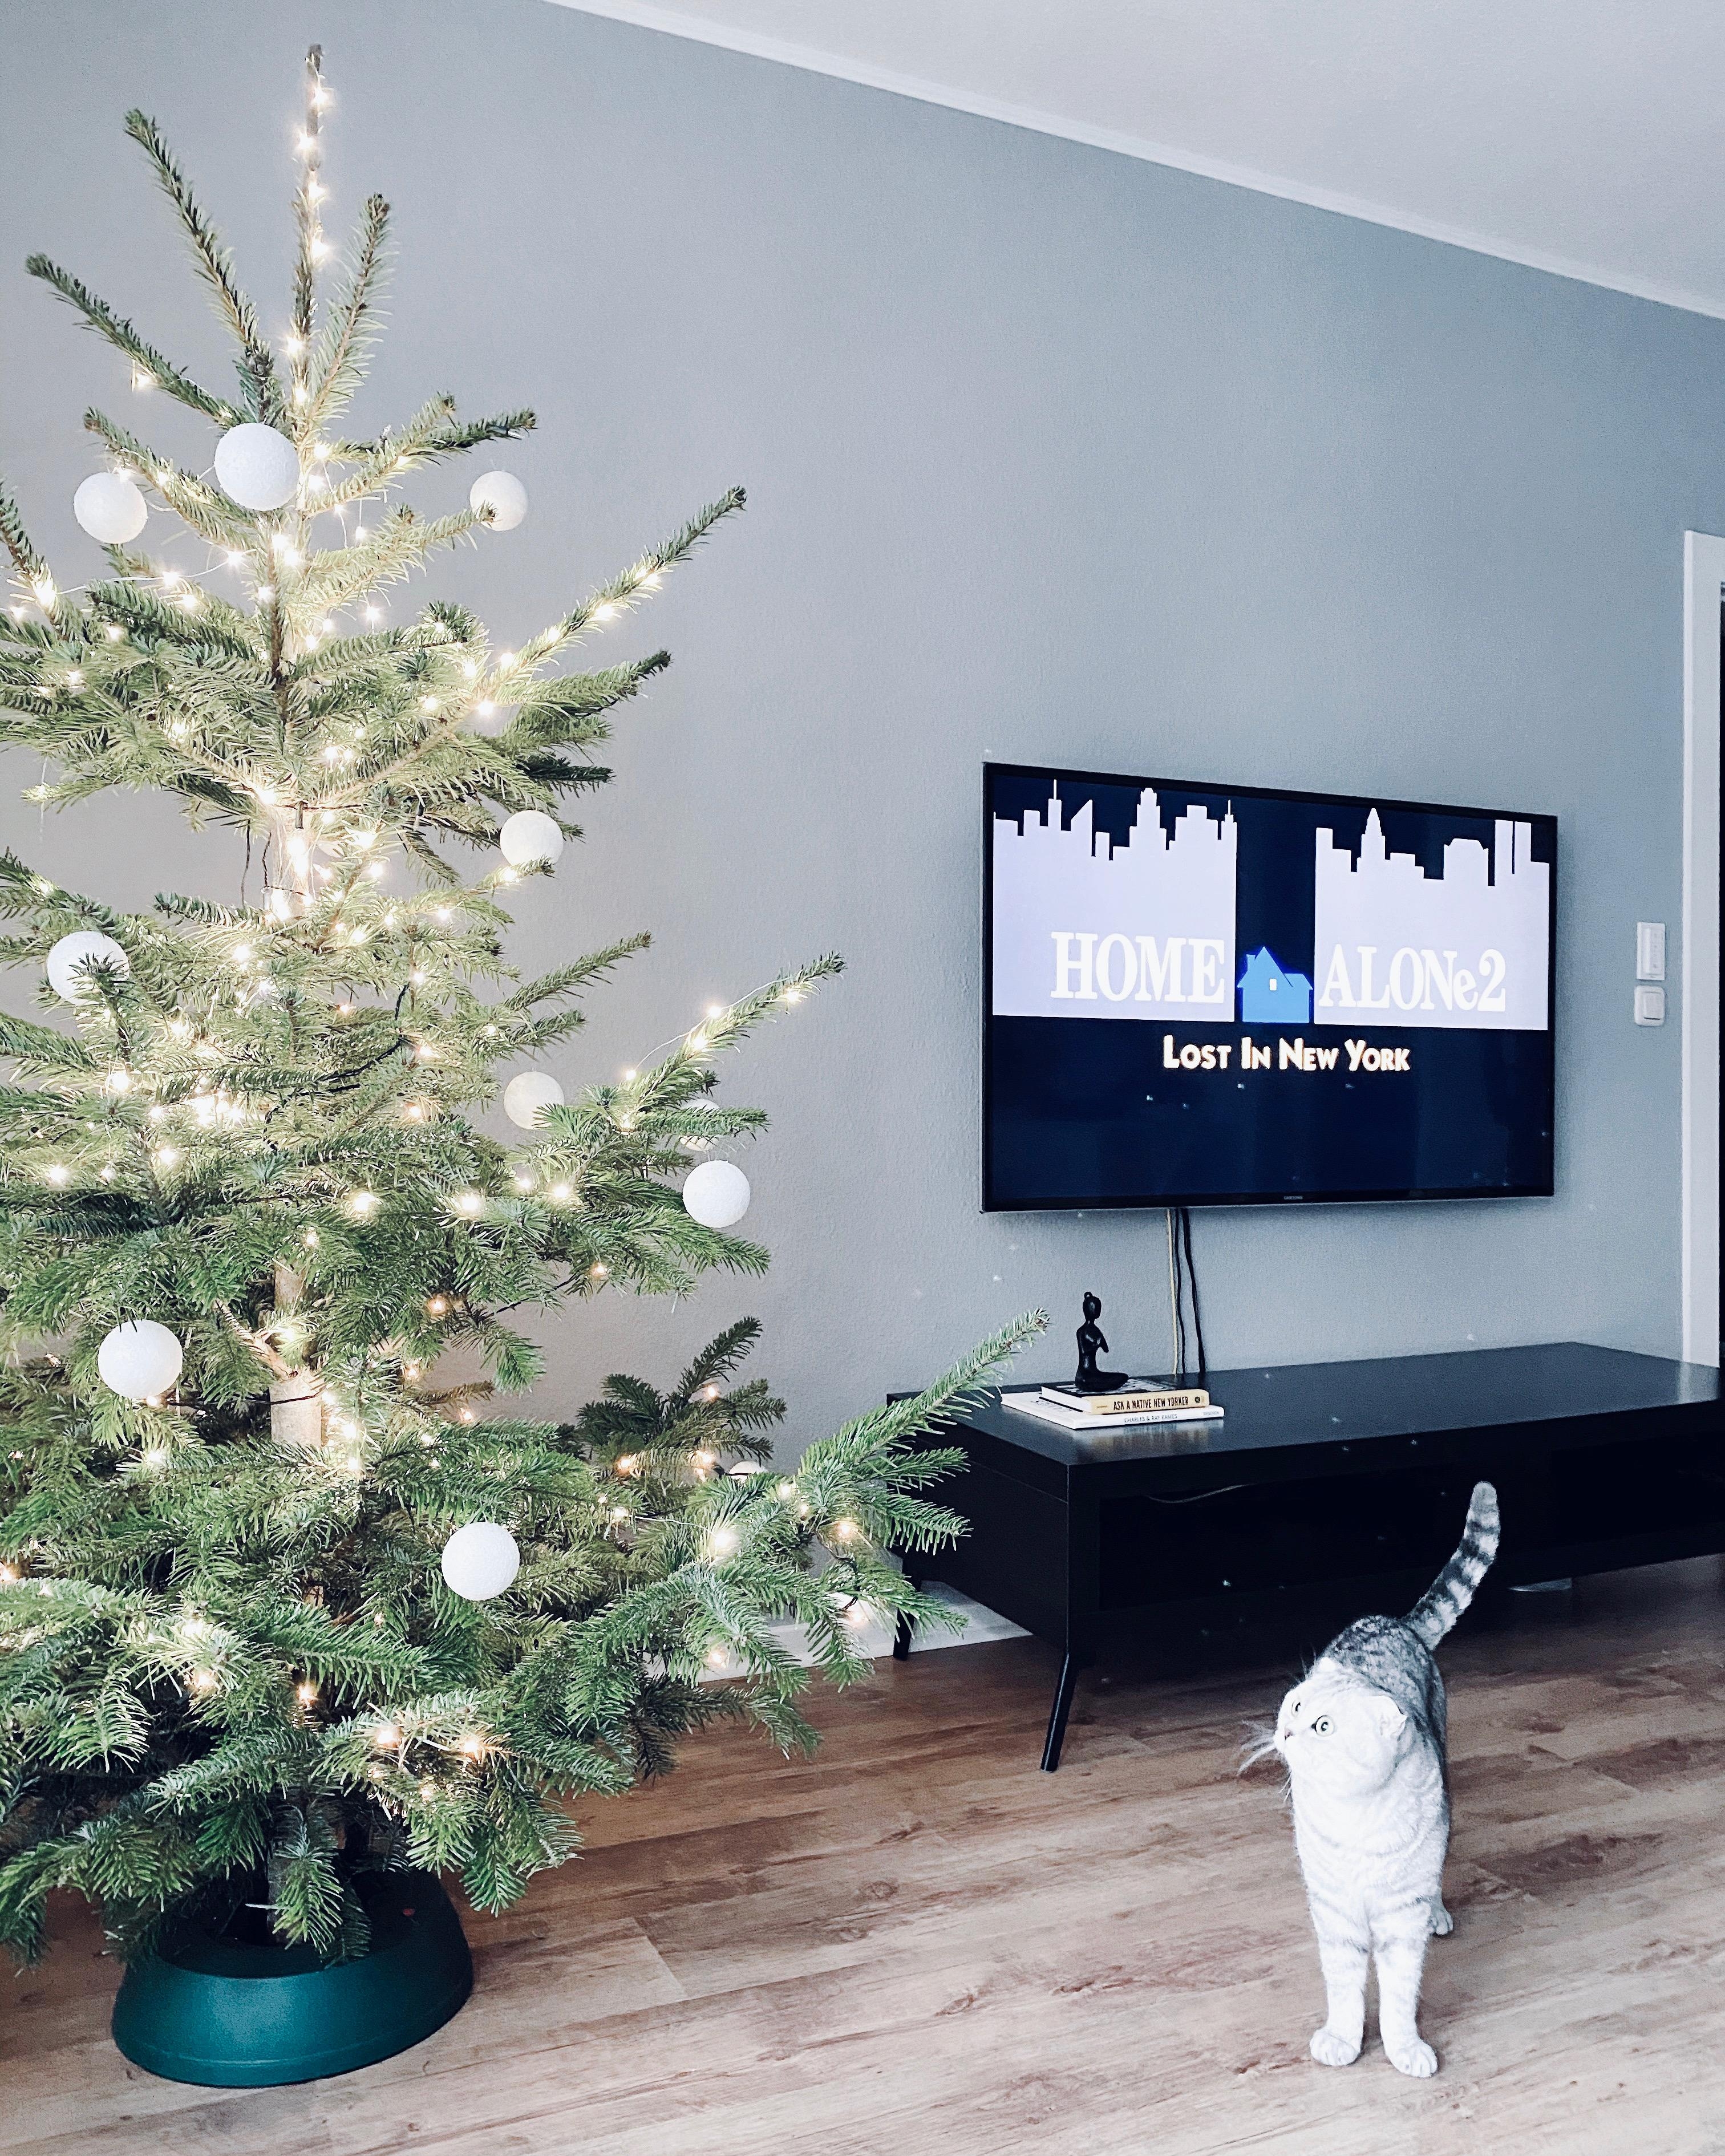 Weihnachtsmodus aktiviert 🎄
#weihnachtsbaum #xmas #interior #kevinalleininnewyork #nordicroom #hygge #catlover 